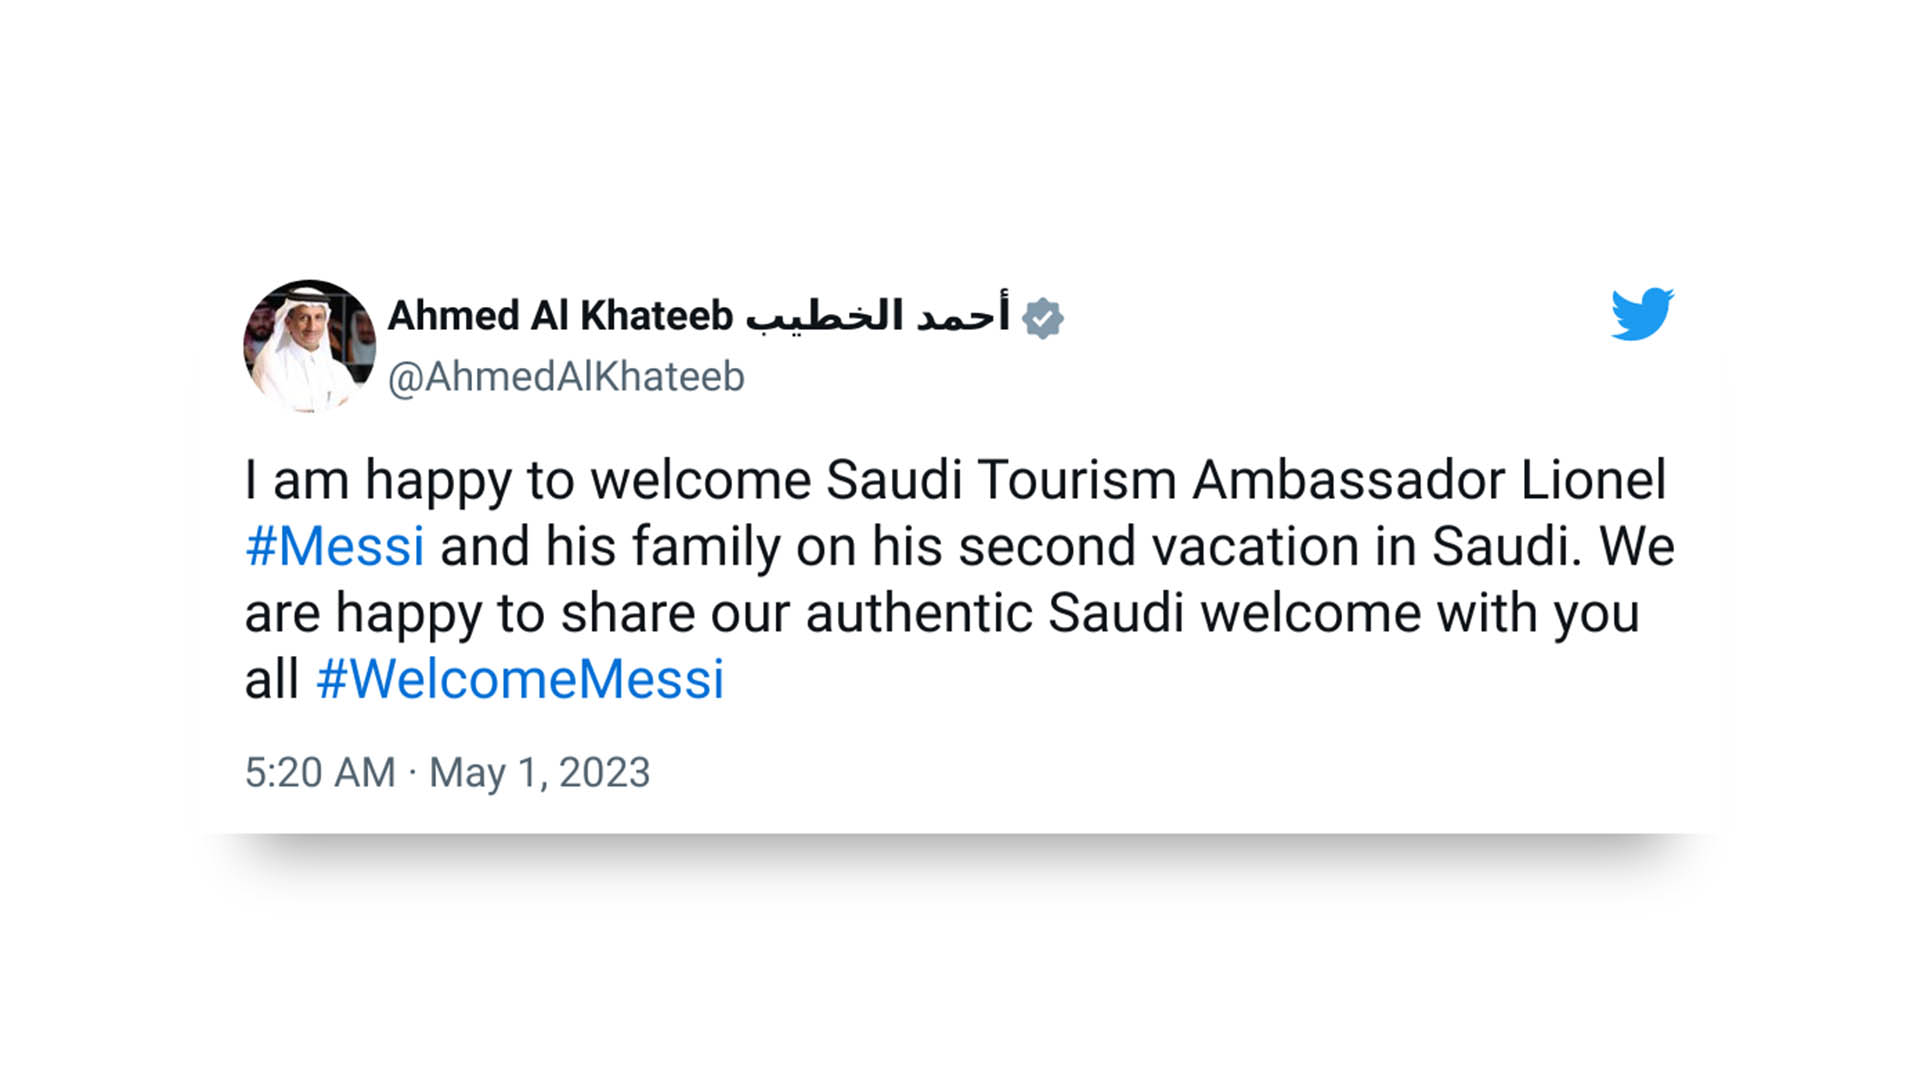 El mensaje del ministro de Turismo de Arabia Saudita ante la llegada de Lionel Messi